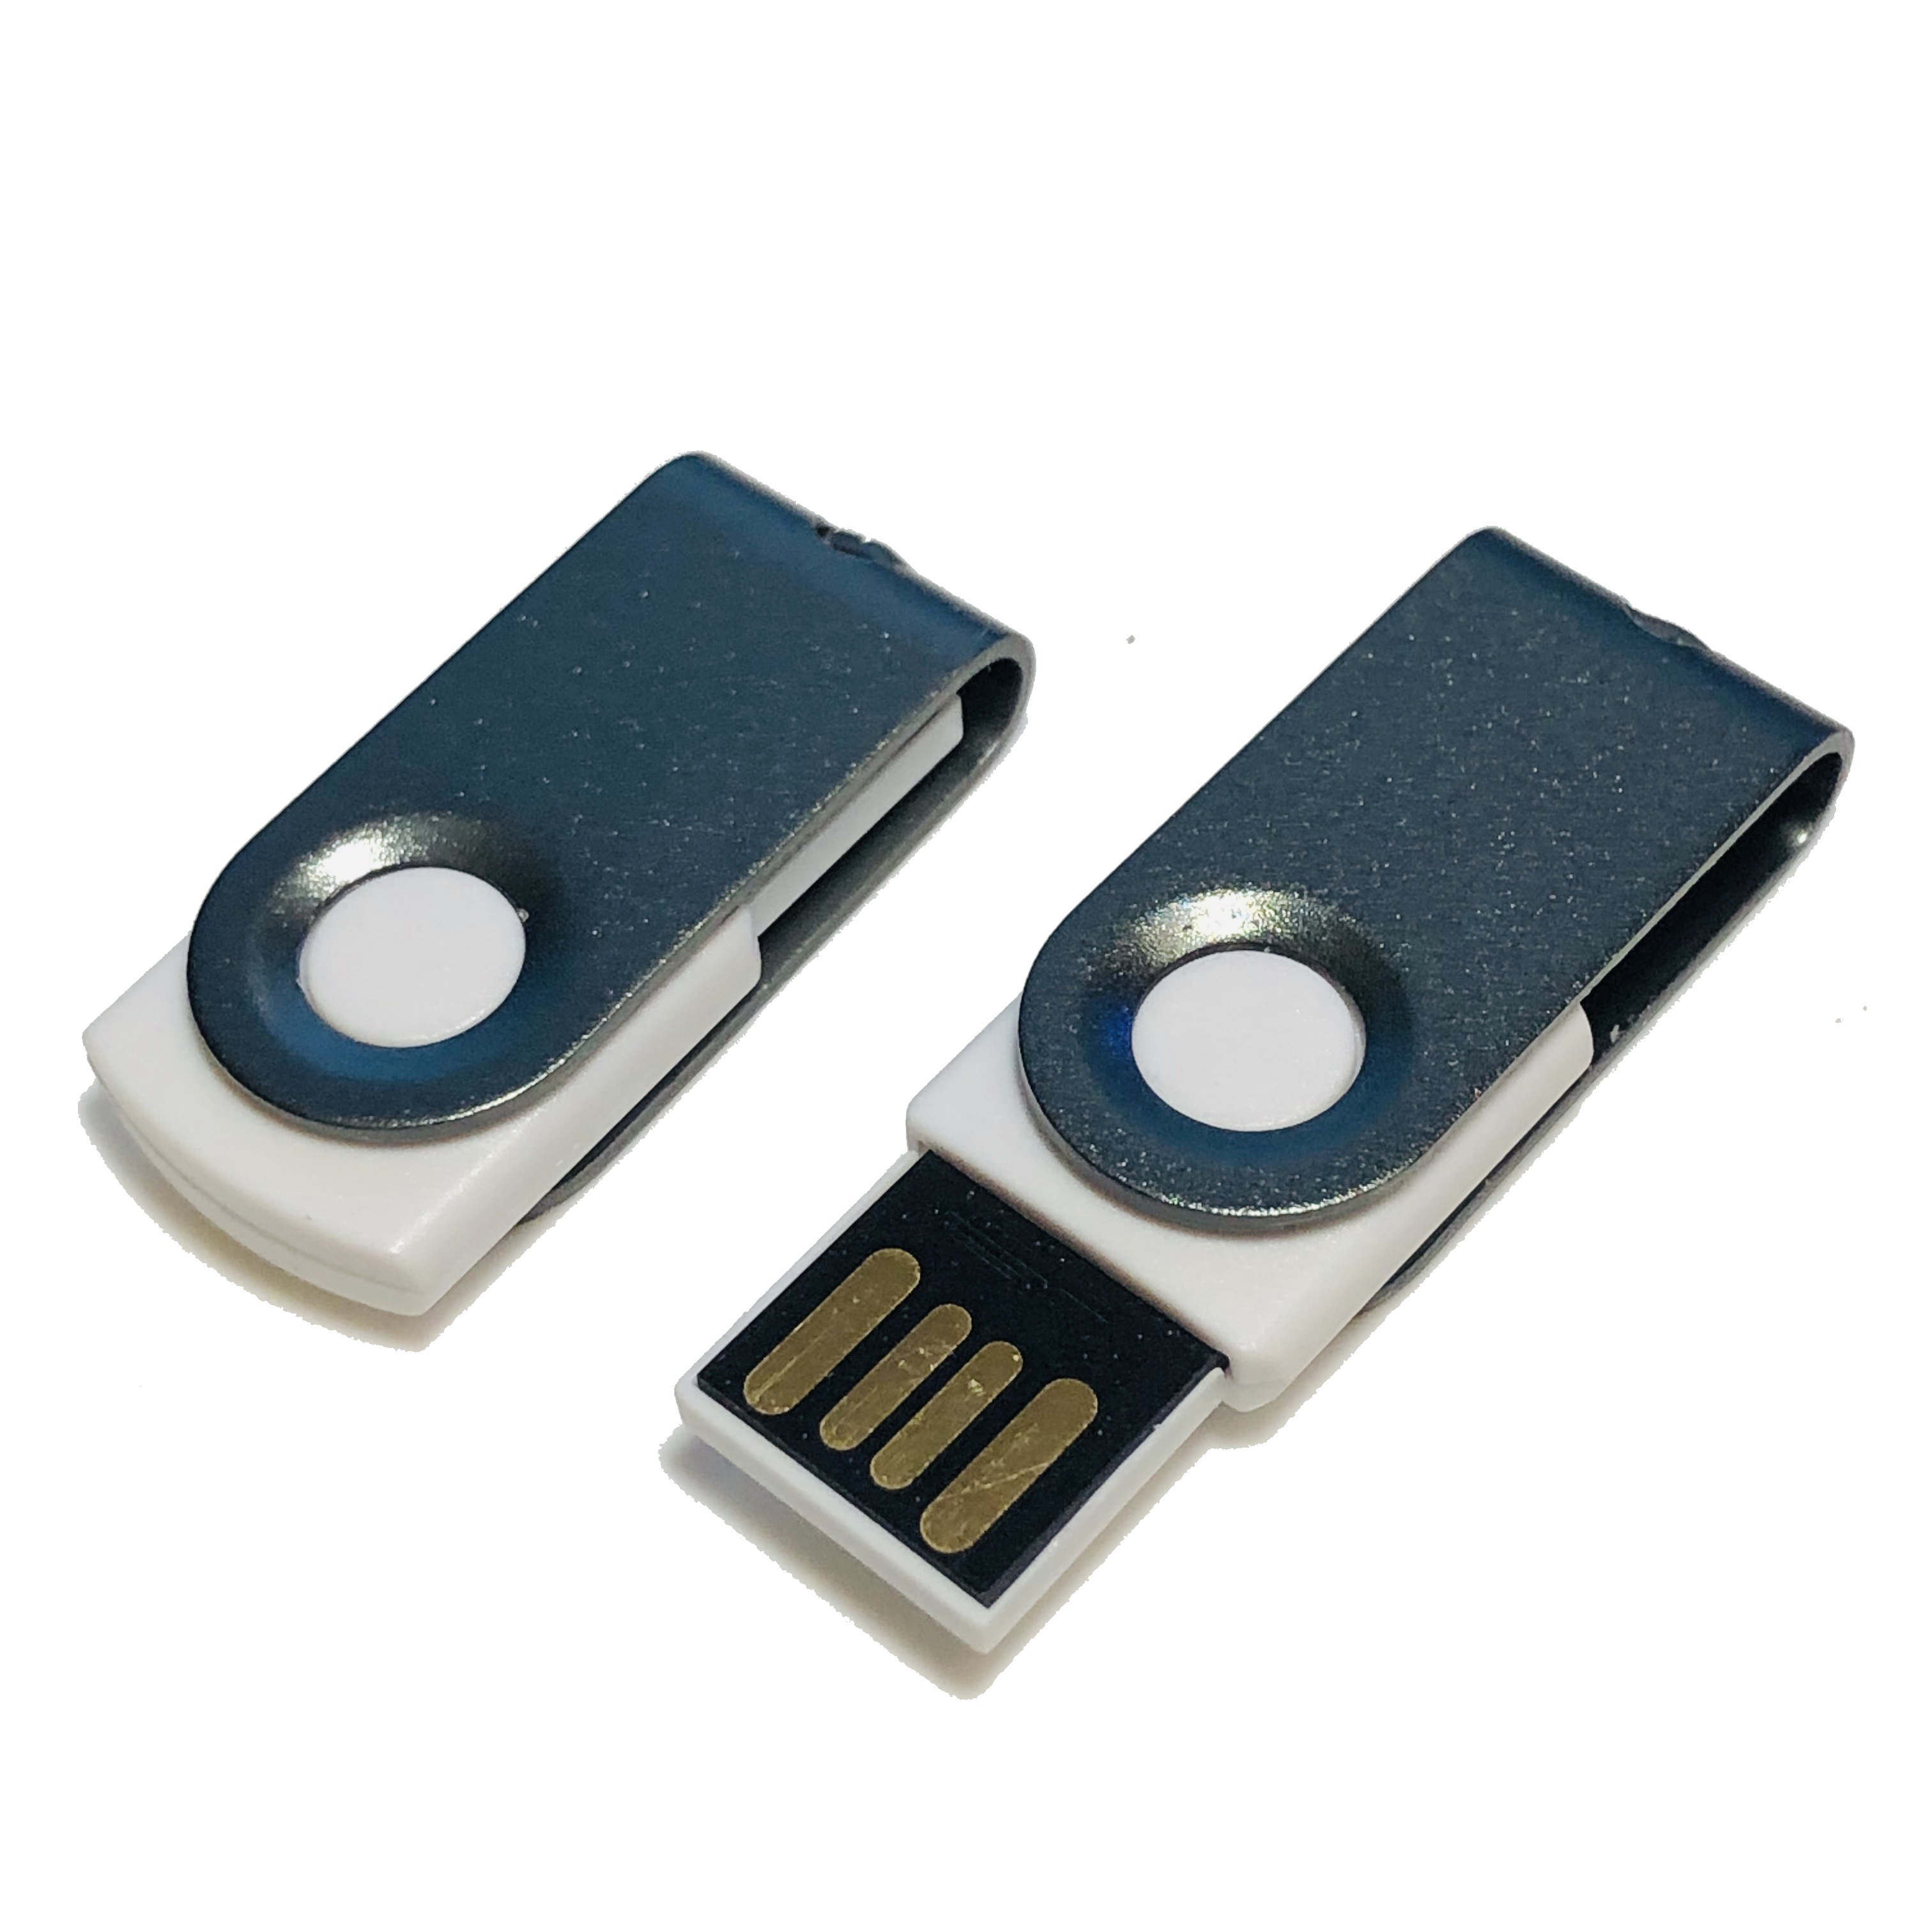 GB) 1 GERMANY (Weiß-Graumetall, ® USB-Stick USB MINI-SWIVEL